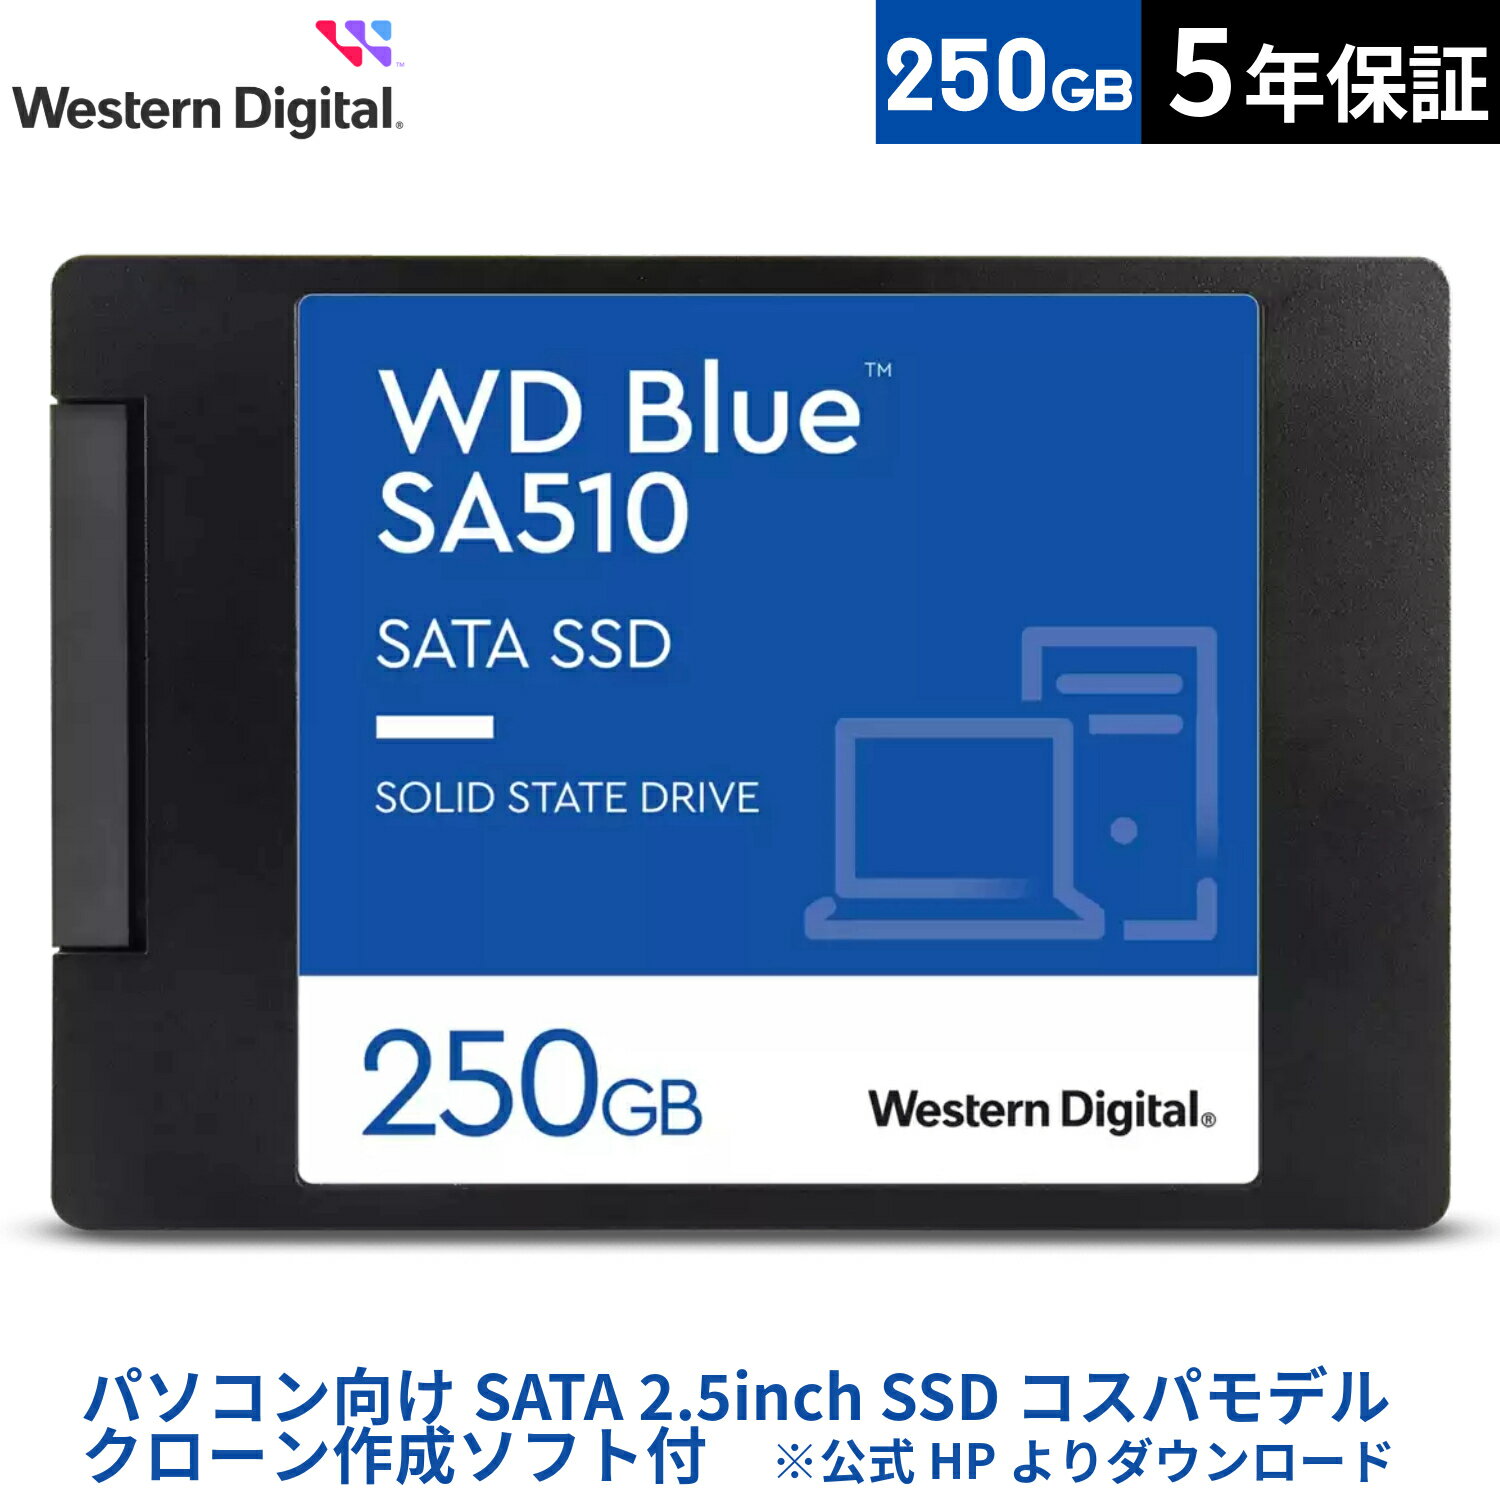 【国内正規流通品】Western Digital ウエスタンデジタル 内蔵SSD 250GB WD Blue SA510 2.5インチ WDS250G3B0A |省電…